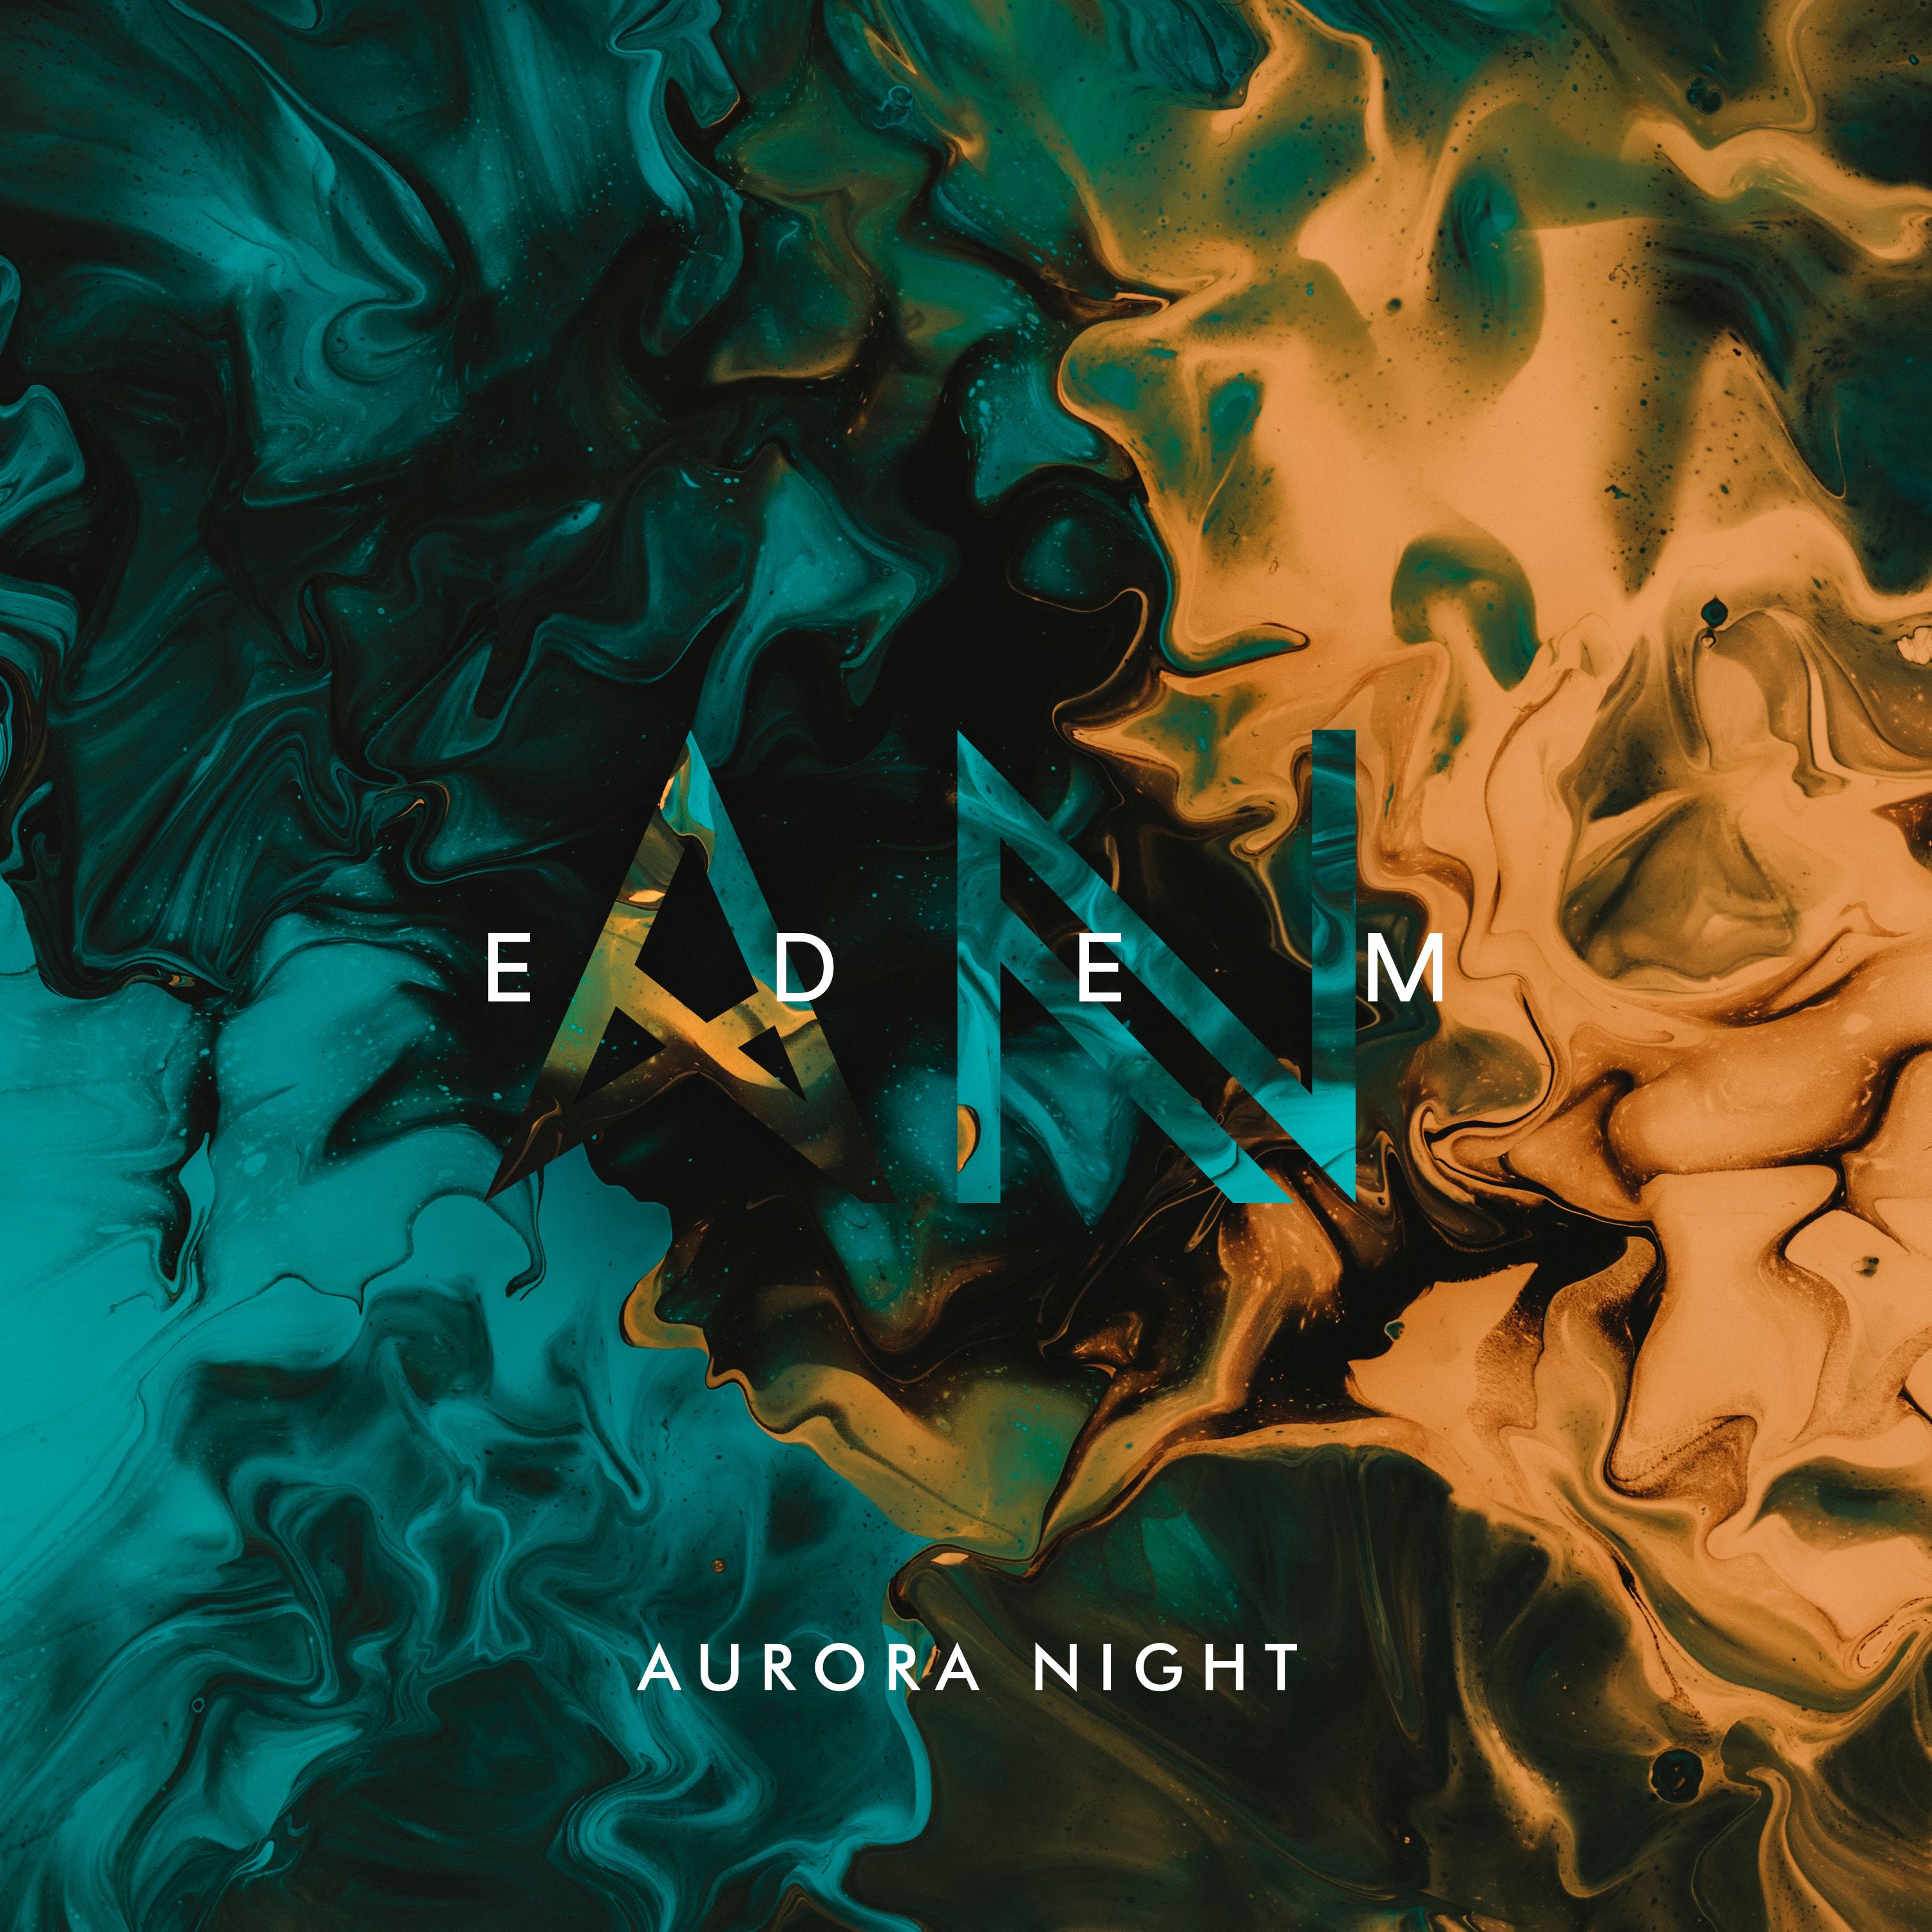 הורד Aurora Night - Edem